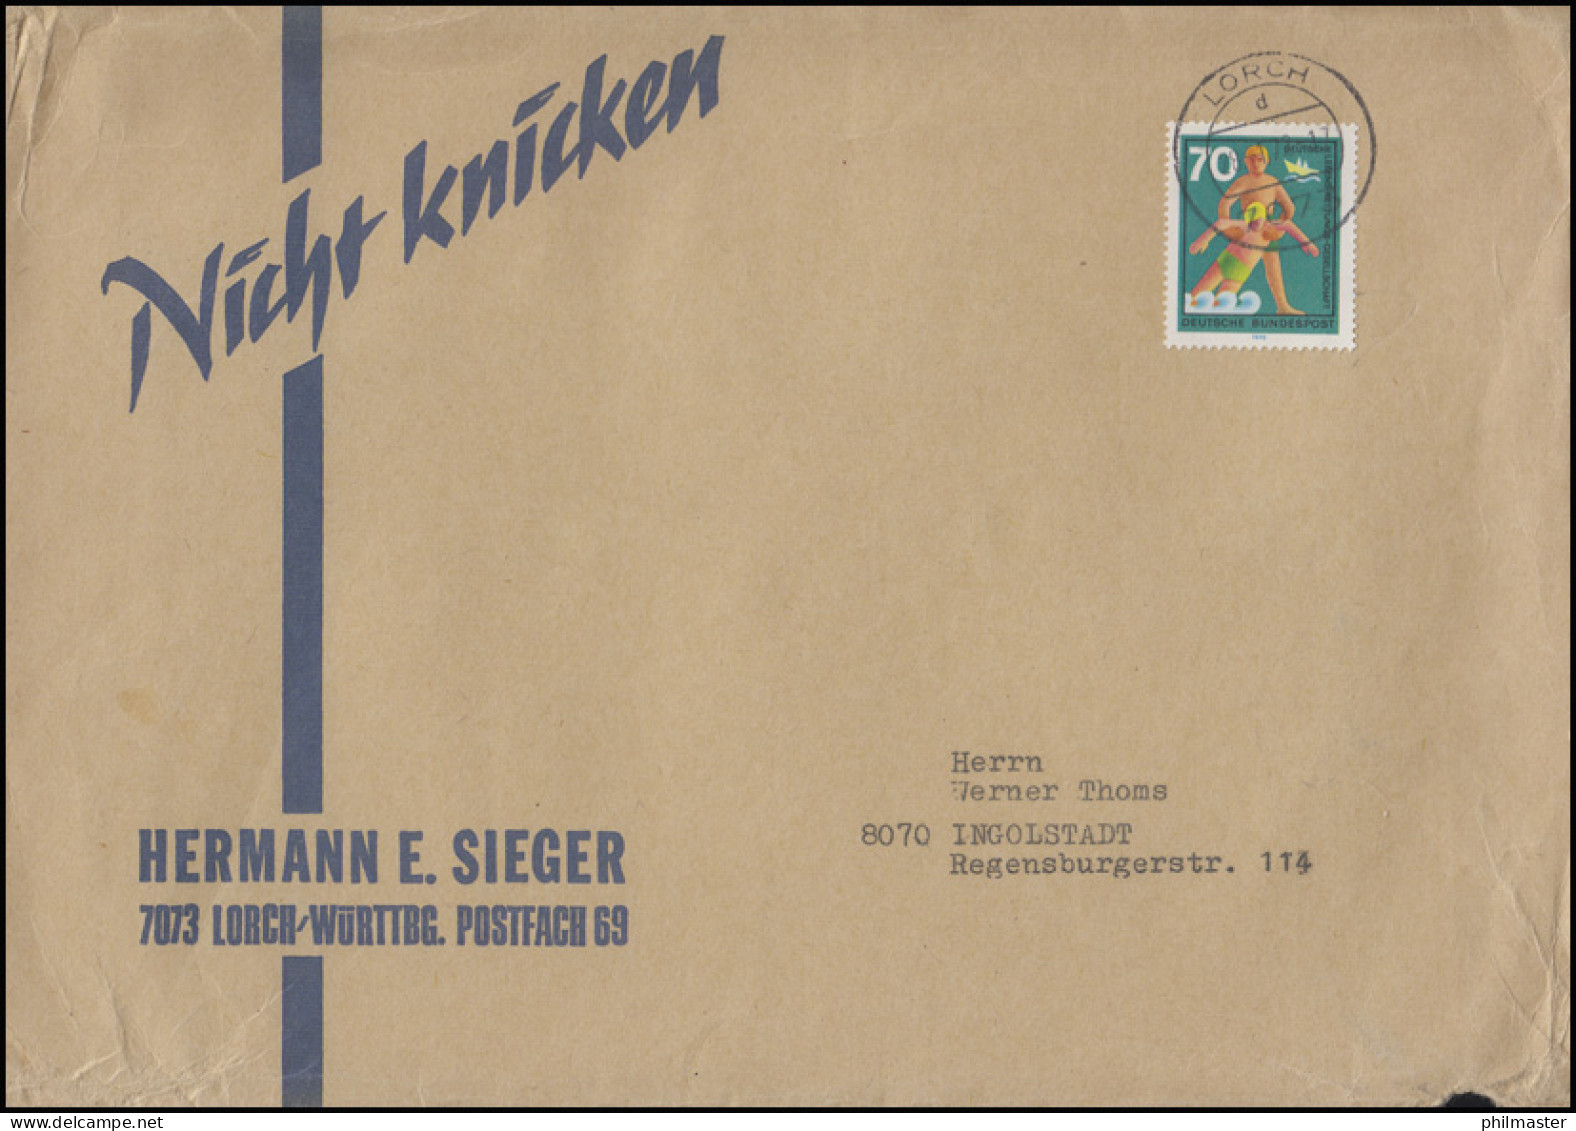 634 Hilfsdienste Deutsche Lebensrettungsgesellschft 70 Pf EF Brief Lorch 28.1.72 - Secourisme